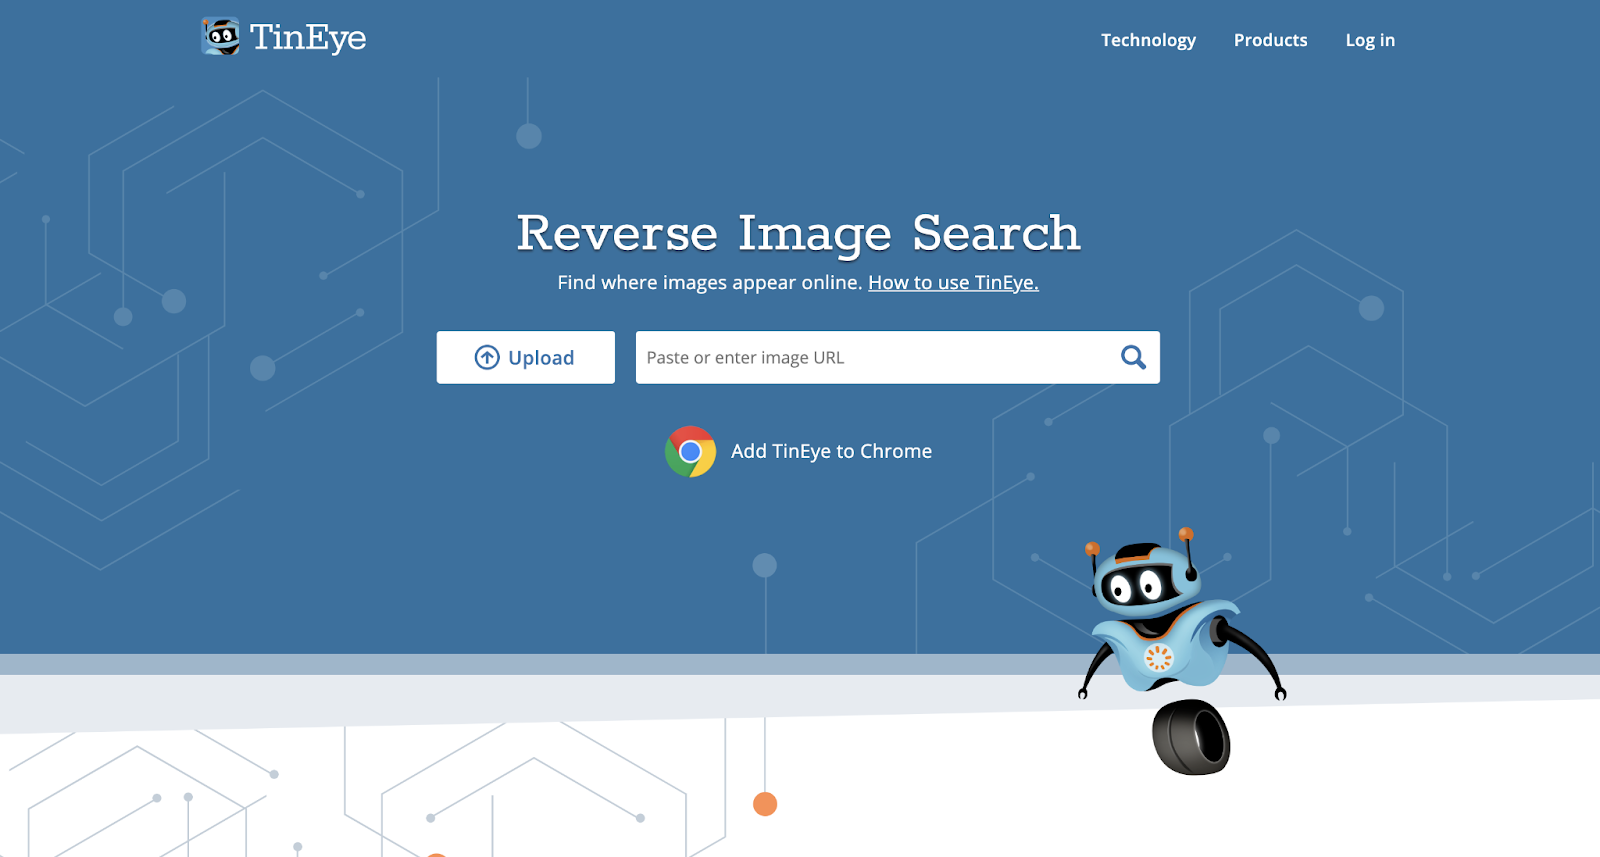 TinEye 是一個流行的圖像搜索引擎。